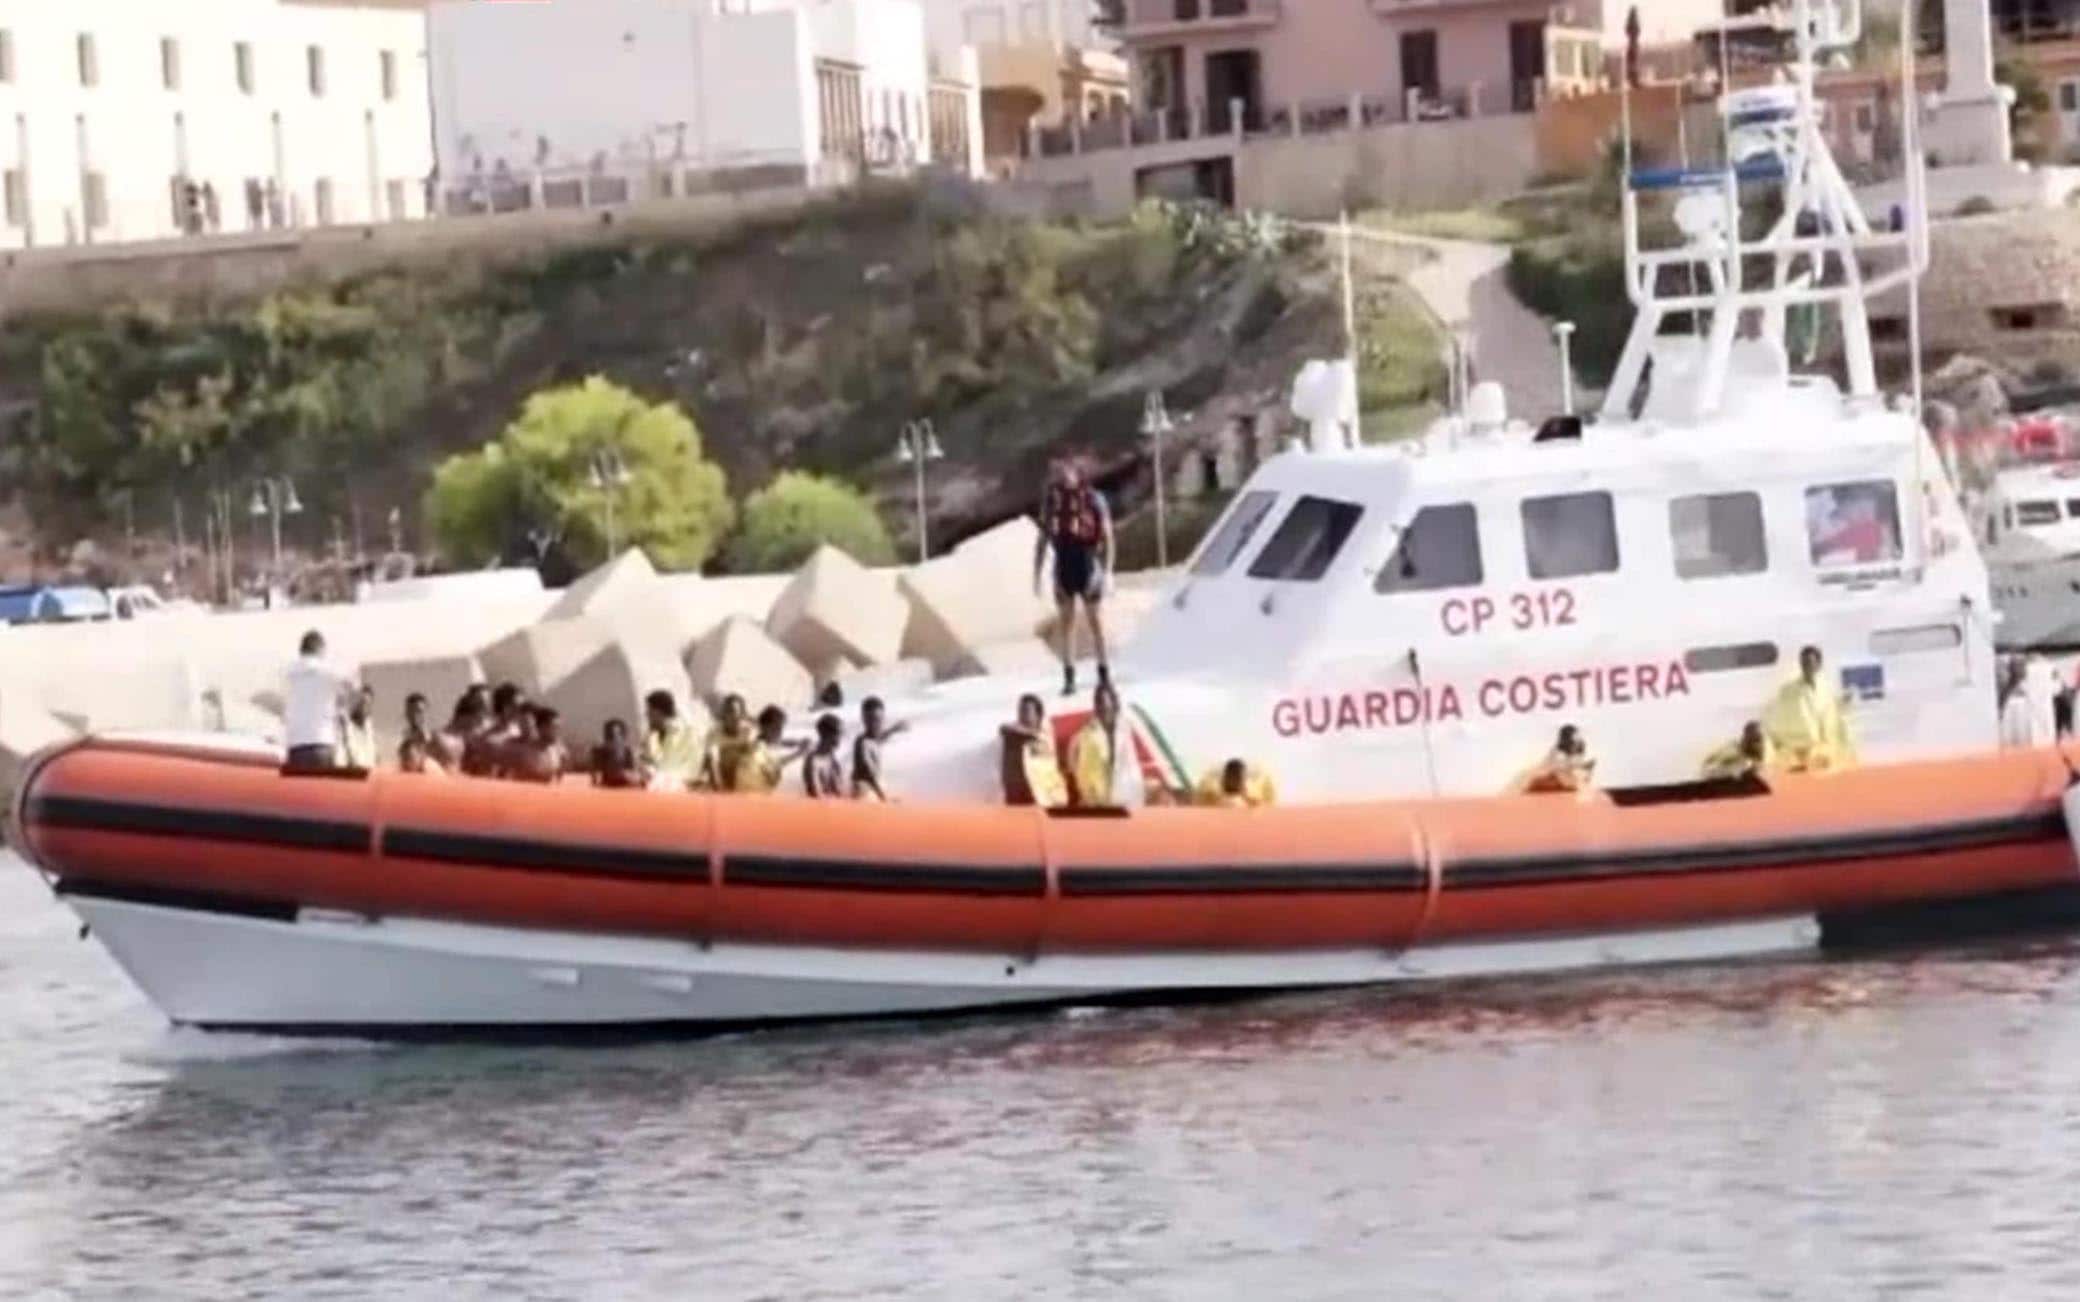 Un fermo immagine da un video della Guardia Costiera sulle attività delle motovedette in soccorso dei superstiti del naufragio, Lampedusa, 3 ottobre 2013. ANSA / US GUARDIA COSTIERA ++NO SALES EDITORIAL USE ONLY++

